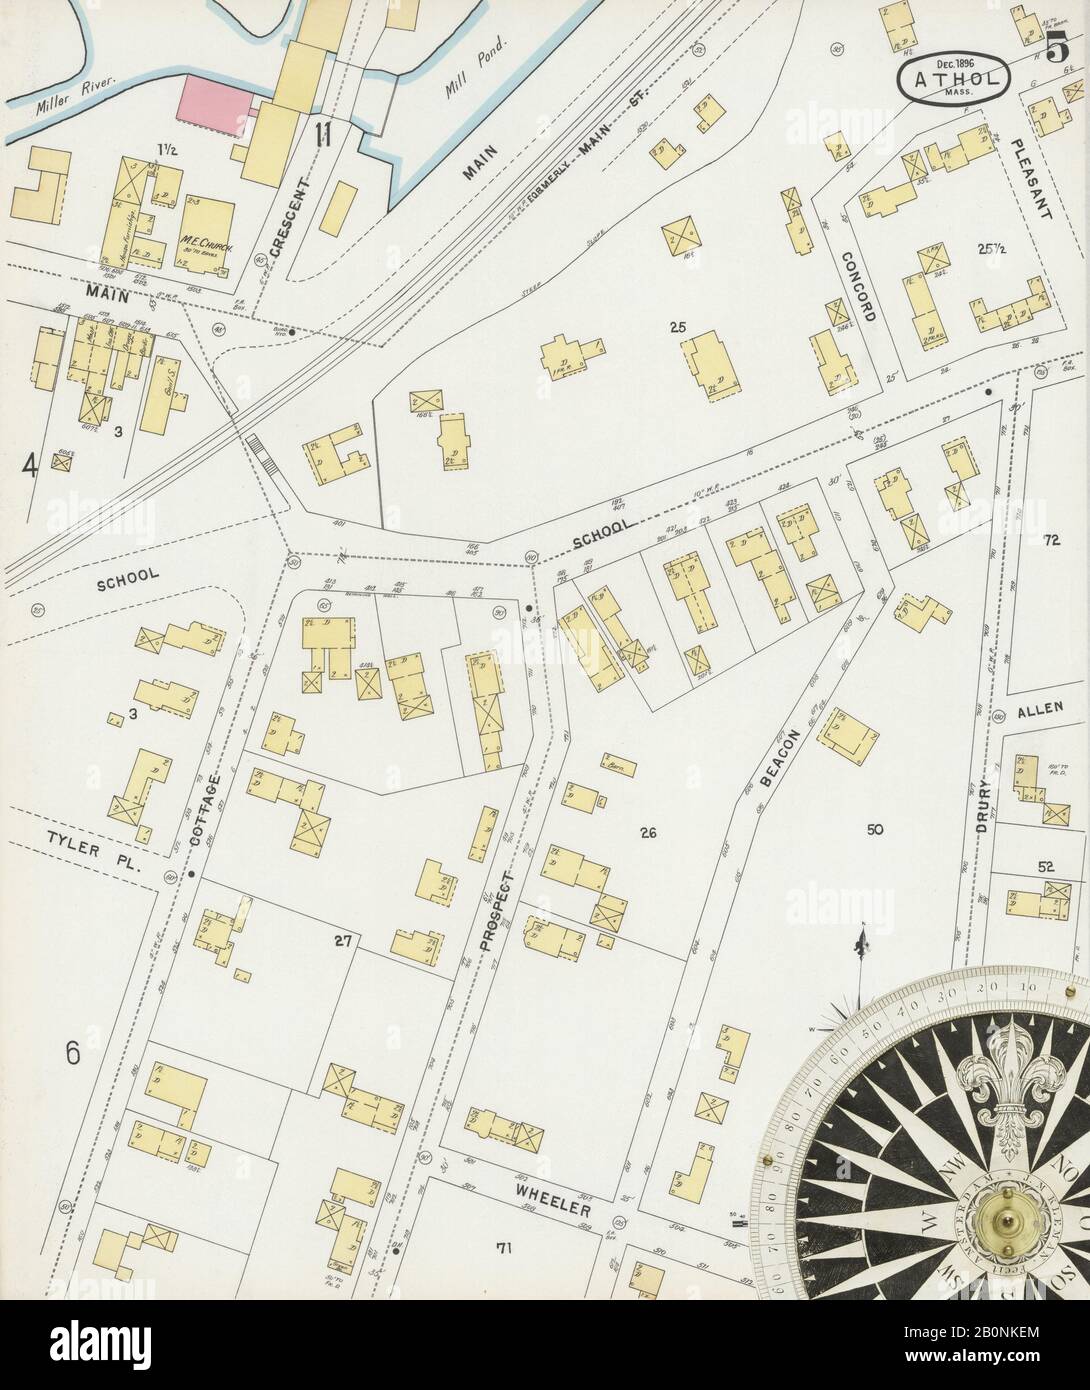 Bild 5 von Sanborn Fire Insurance Map aus Athol, Worcester County, Massachusetts. Dezember 1896. 12 Blatt(e), Amerika, Straßenkarte mit einem Kompass Aus Dem 19. Jahrhundert Stockfoto